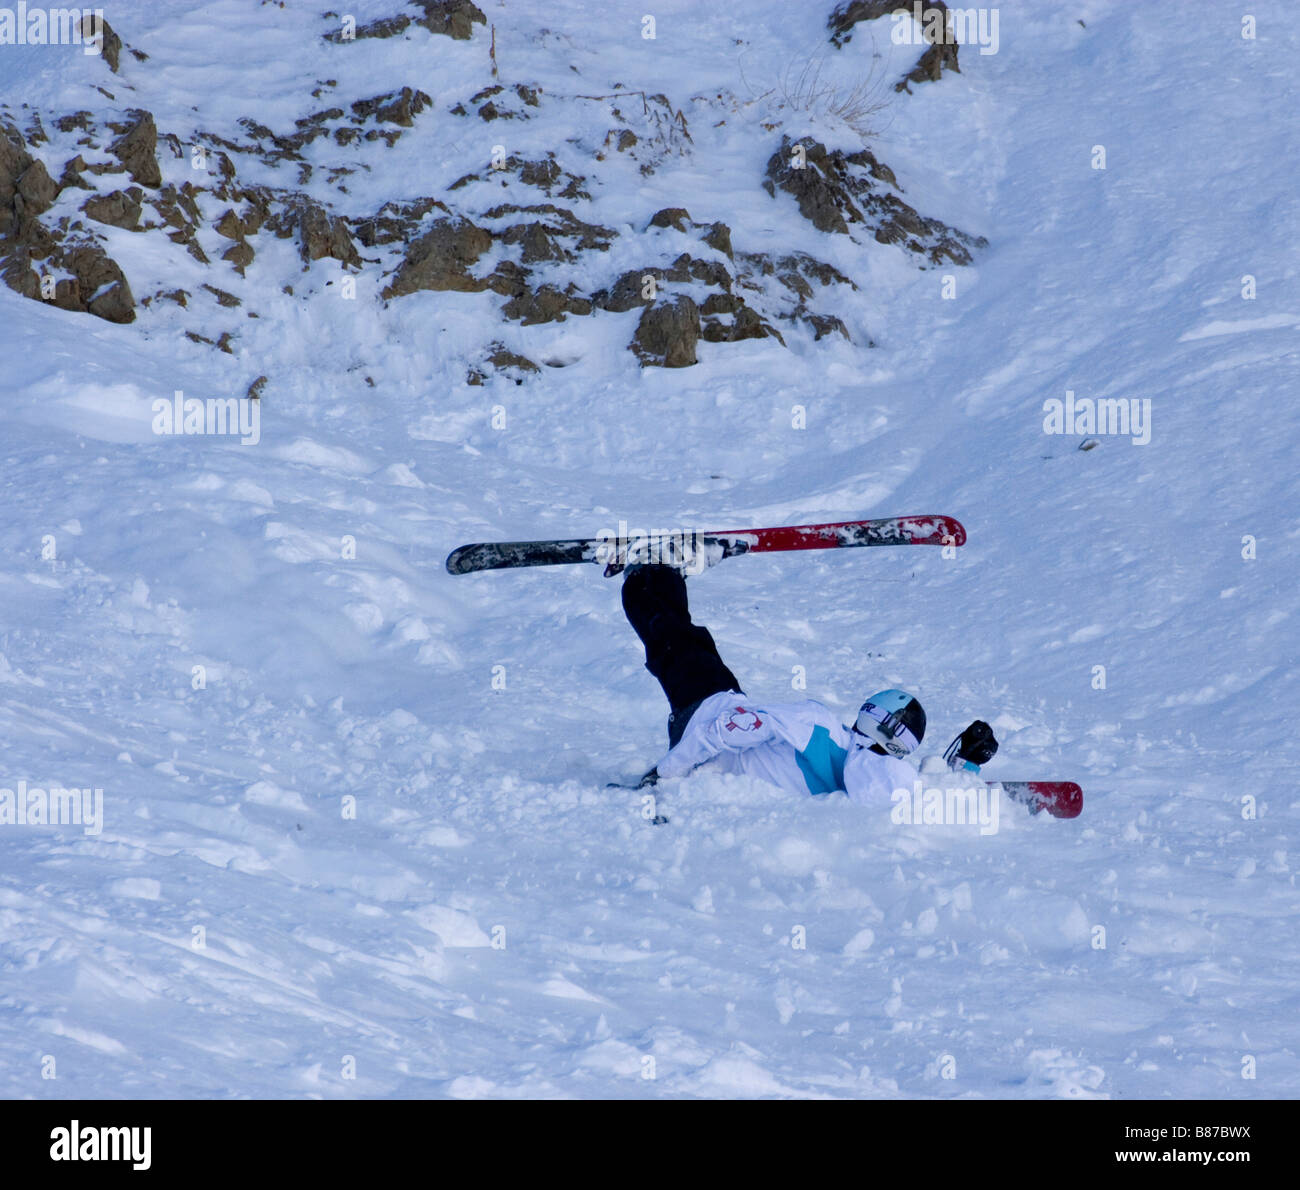 Skieur tombé avec une jambe dans l'air dans un position humorisée Banque D'Images